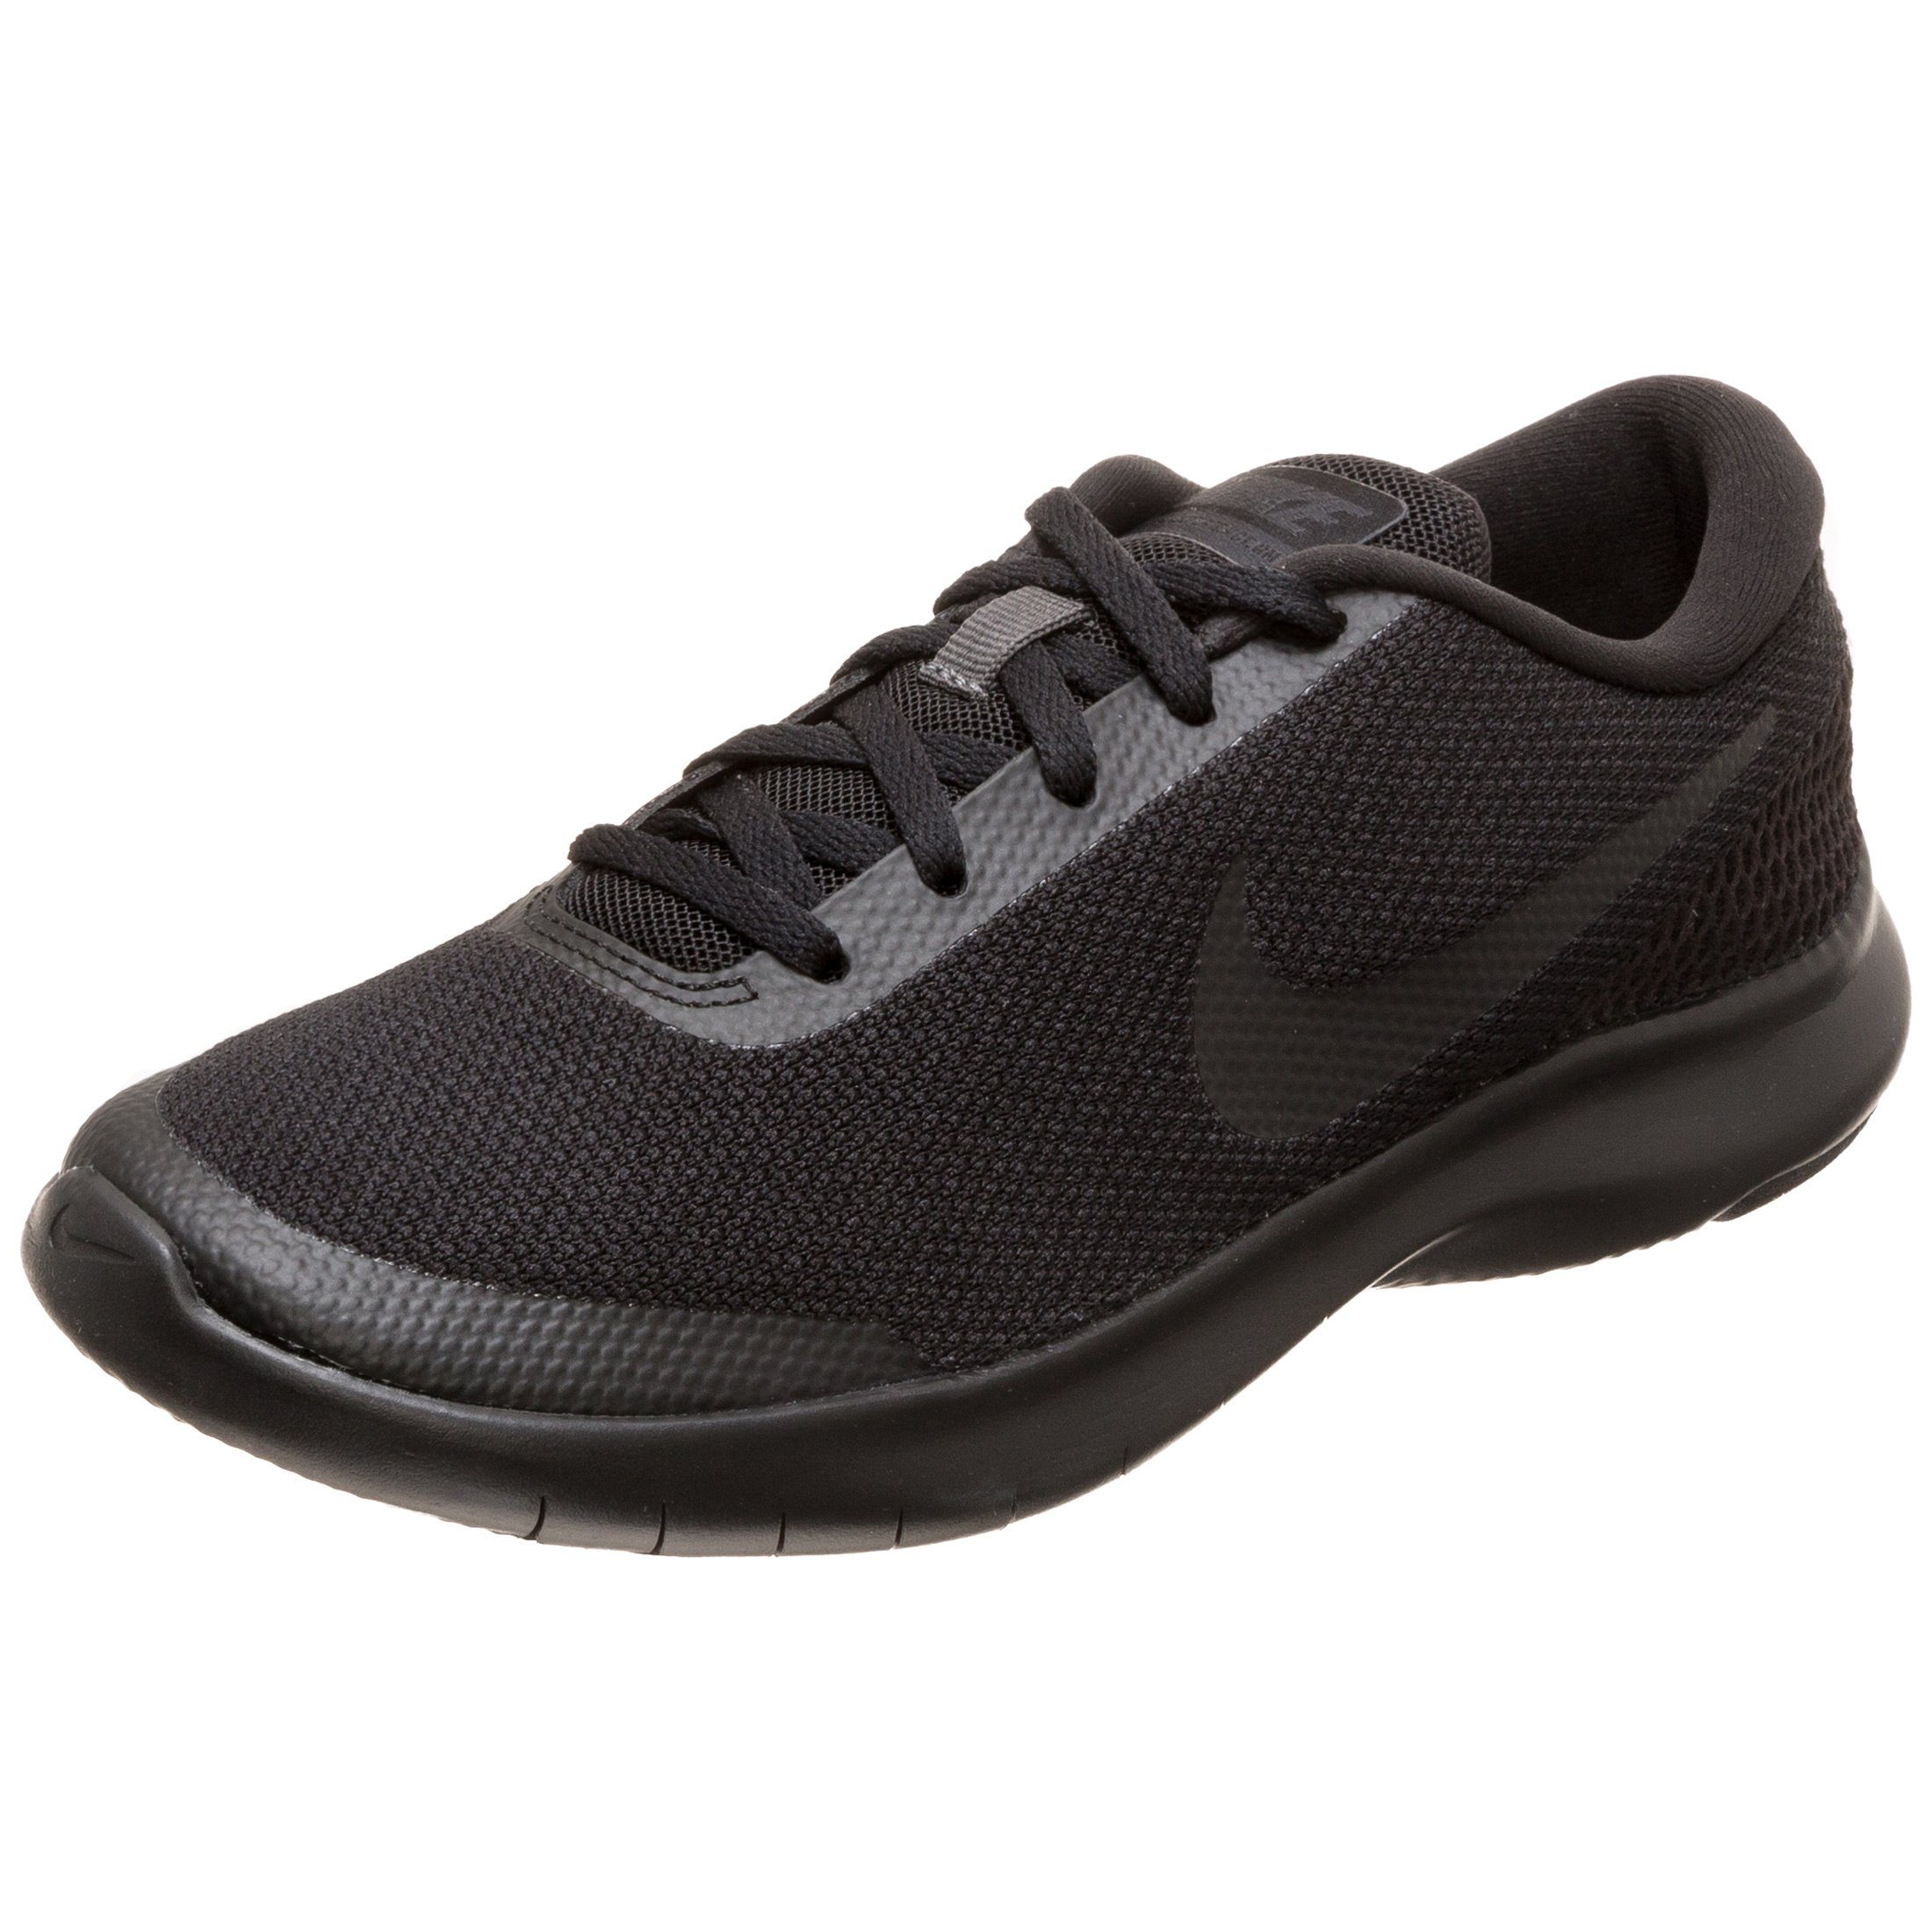 Nike »Flex Experience Run 7« Laufschuh, Leichter Schuh für verschiedene  Aktivitäten online kaufen | OTTO